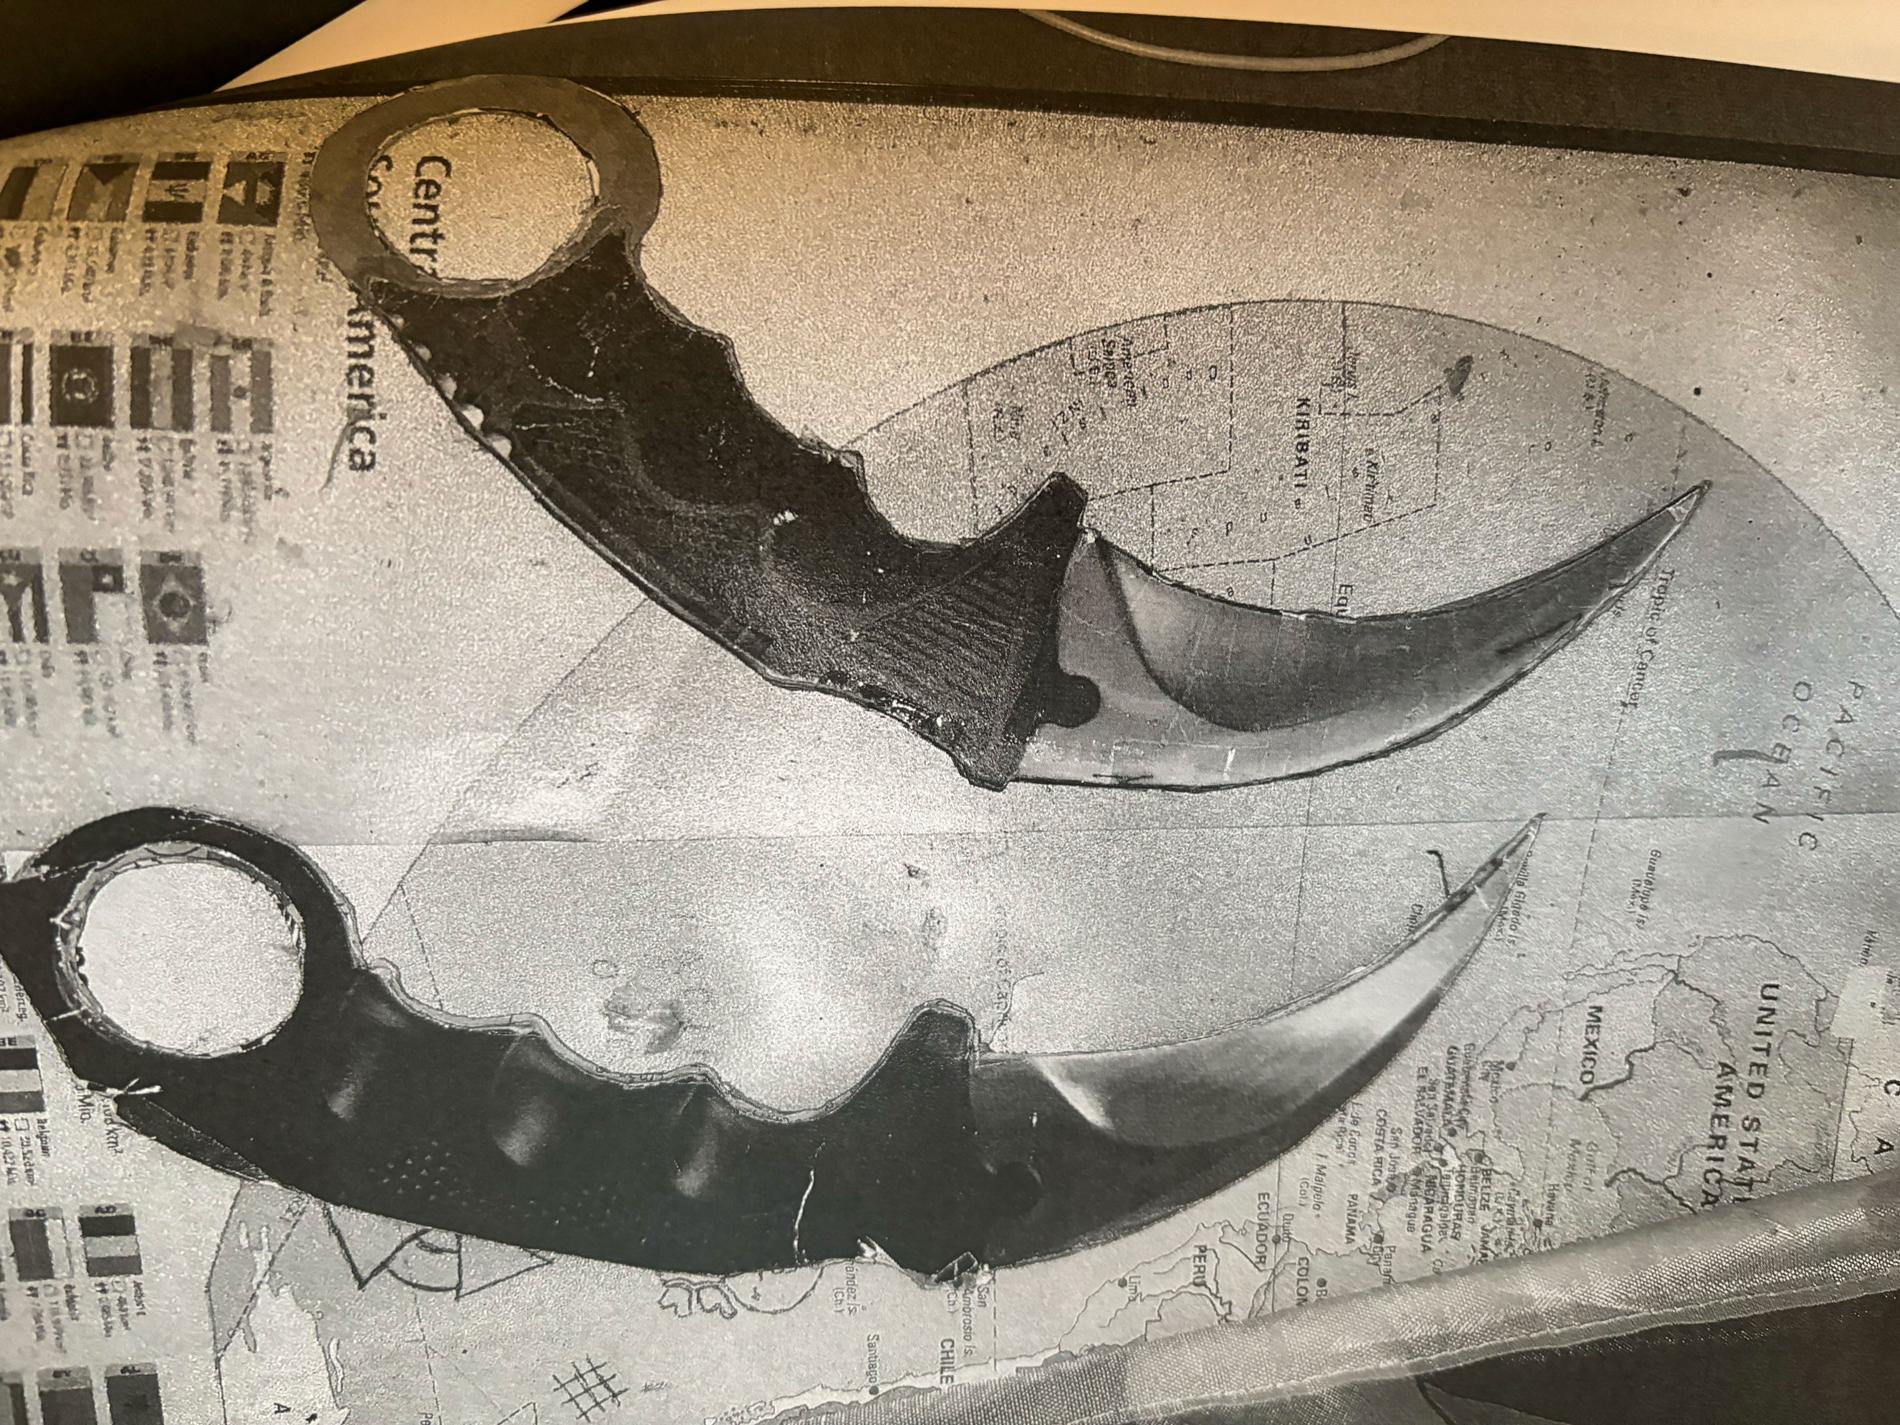 Vid tillslaget mot Davids hem hittade polisen flera knivar.